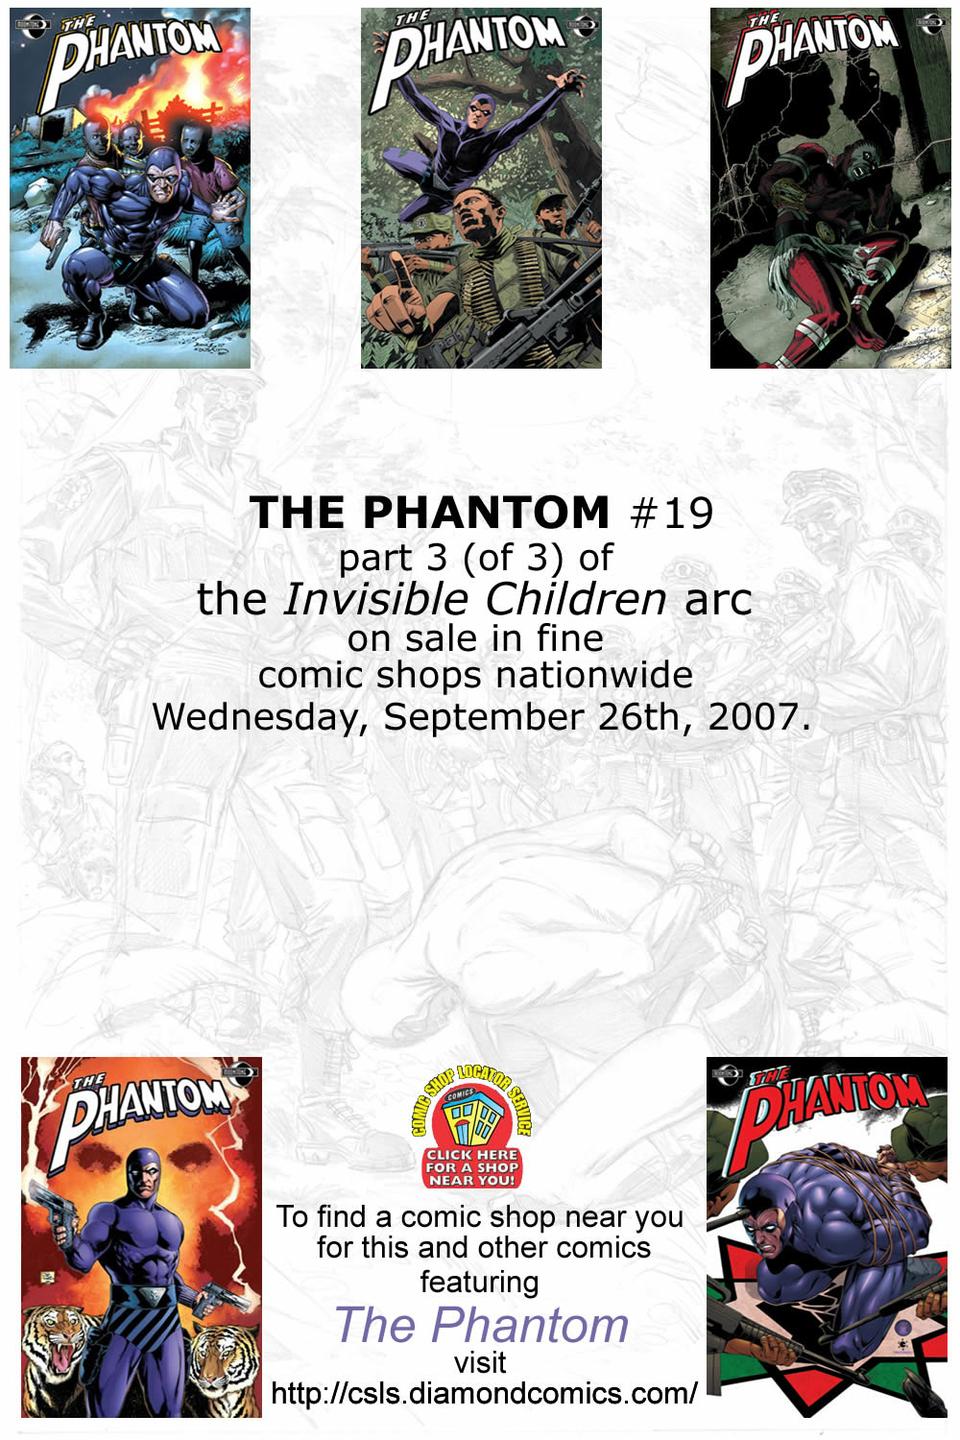 The Phantom #16 page 2a